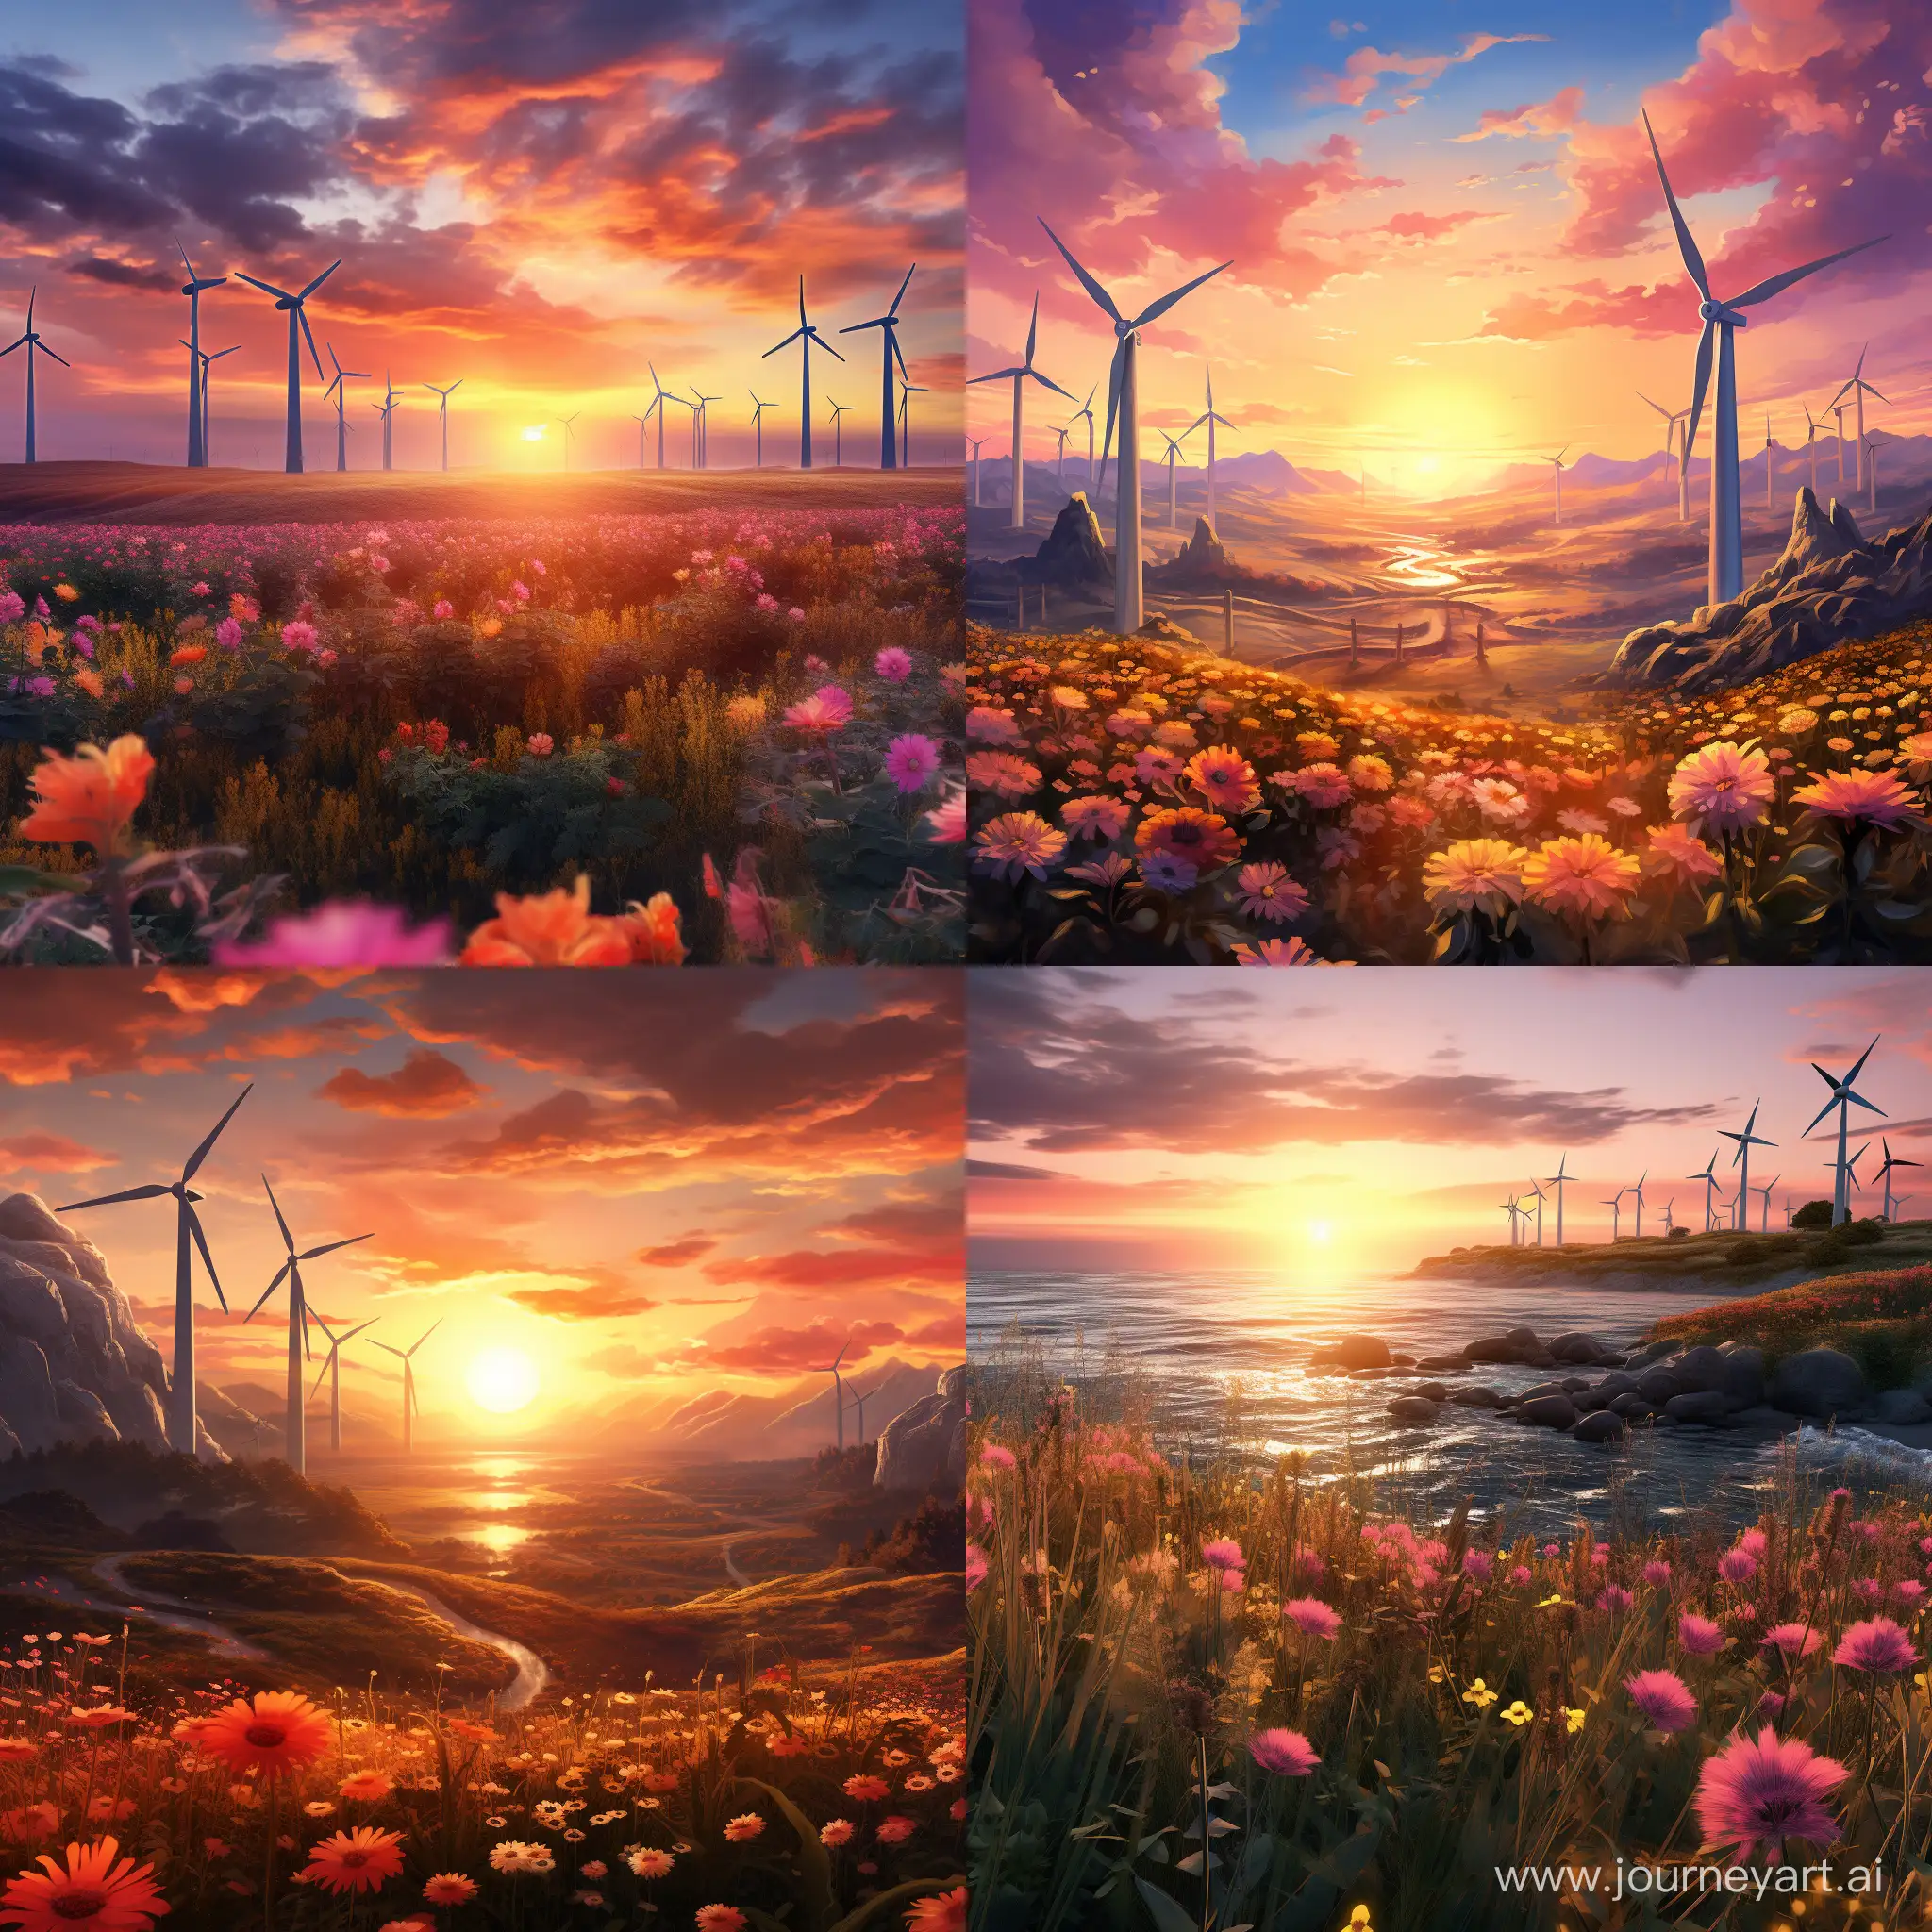 Field of Wind powerplants, looking like flowers
Sunset, friendly look